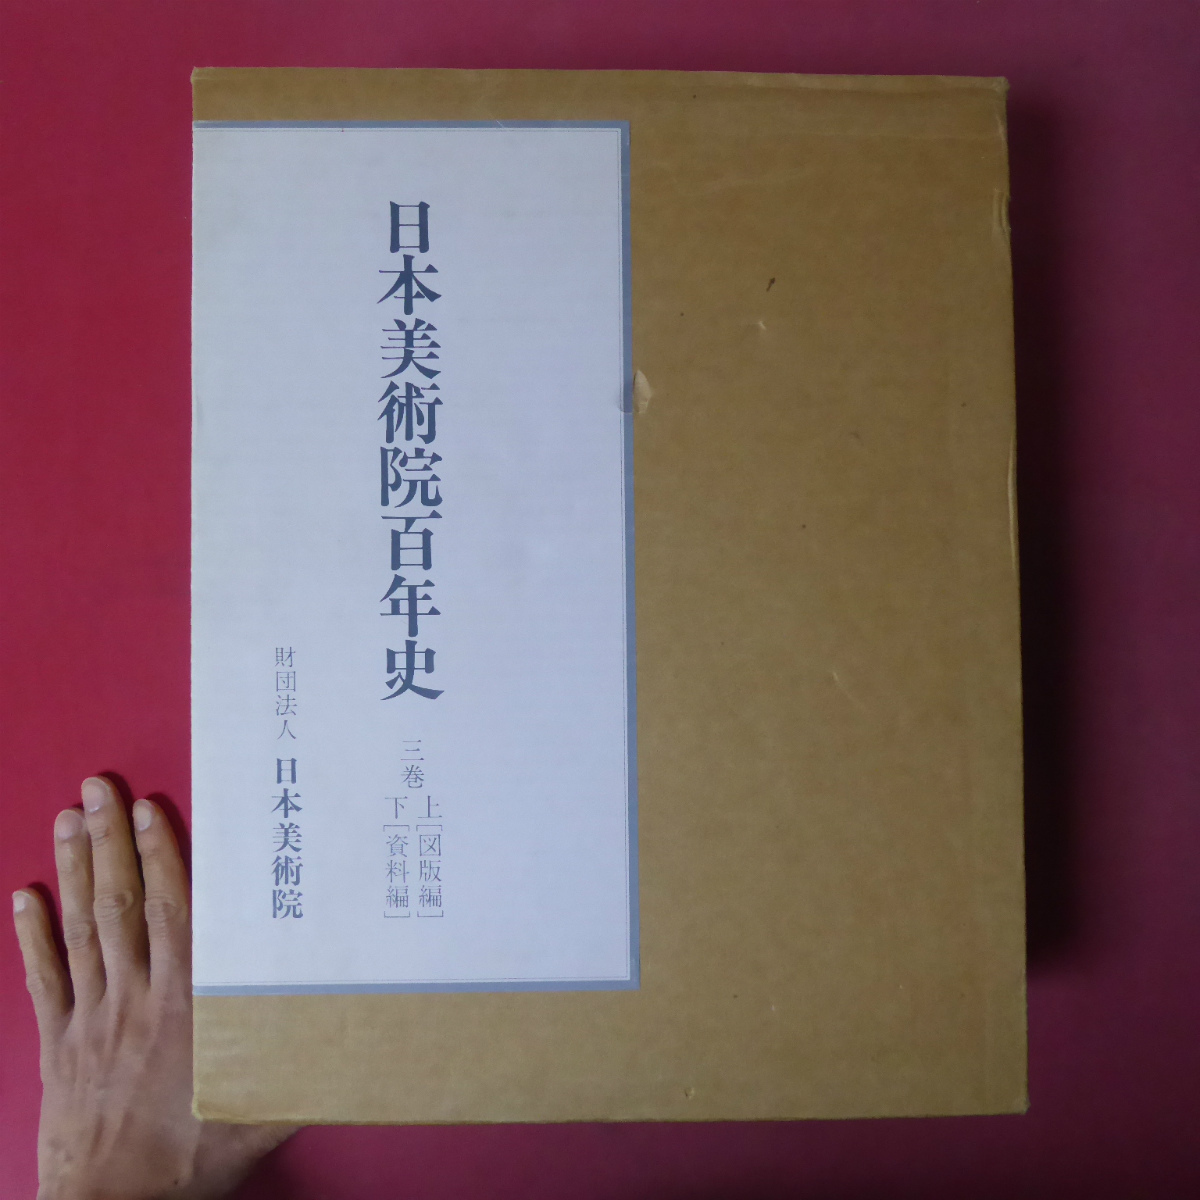 Large i [Los 100 años de historia de la Academia de Arte de Japón, Volúmenes 1 y 2, 1992, Academia de Arte de Japón] @5, Cuadro, Libro de arte, Recopilación, Libro de arte